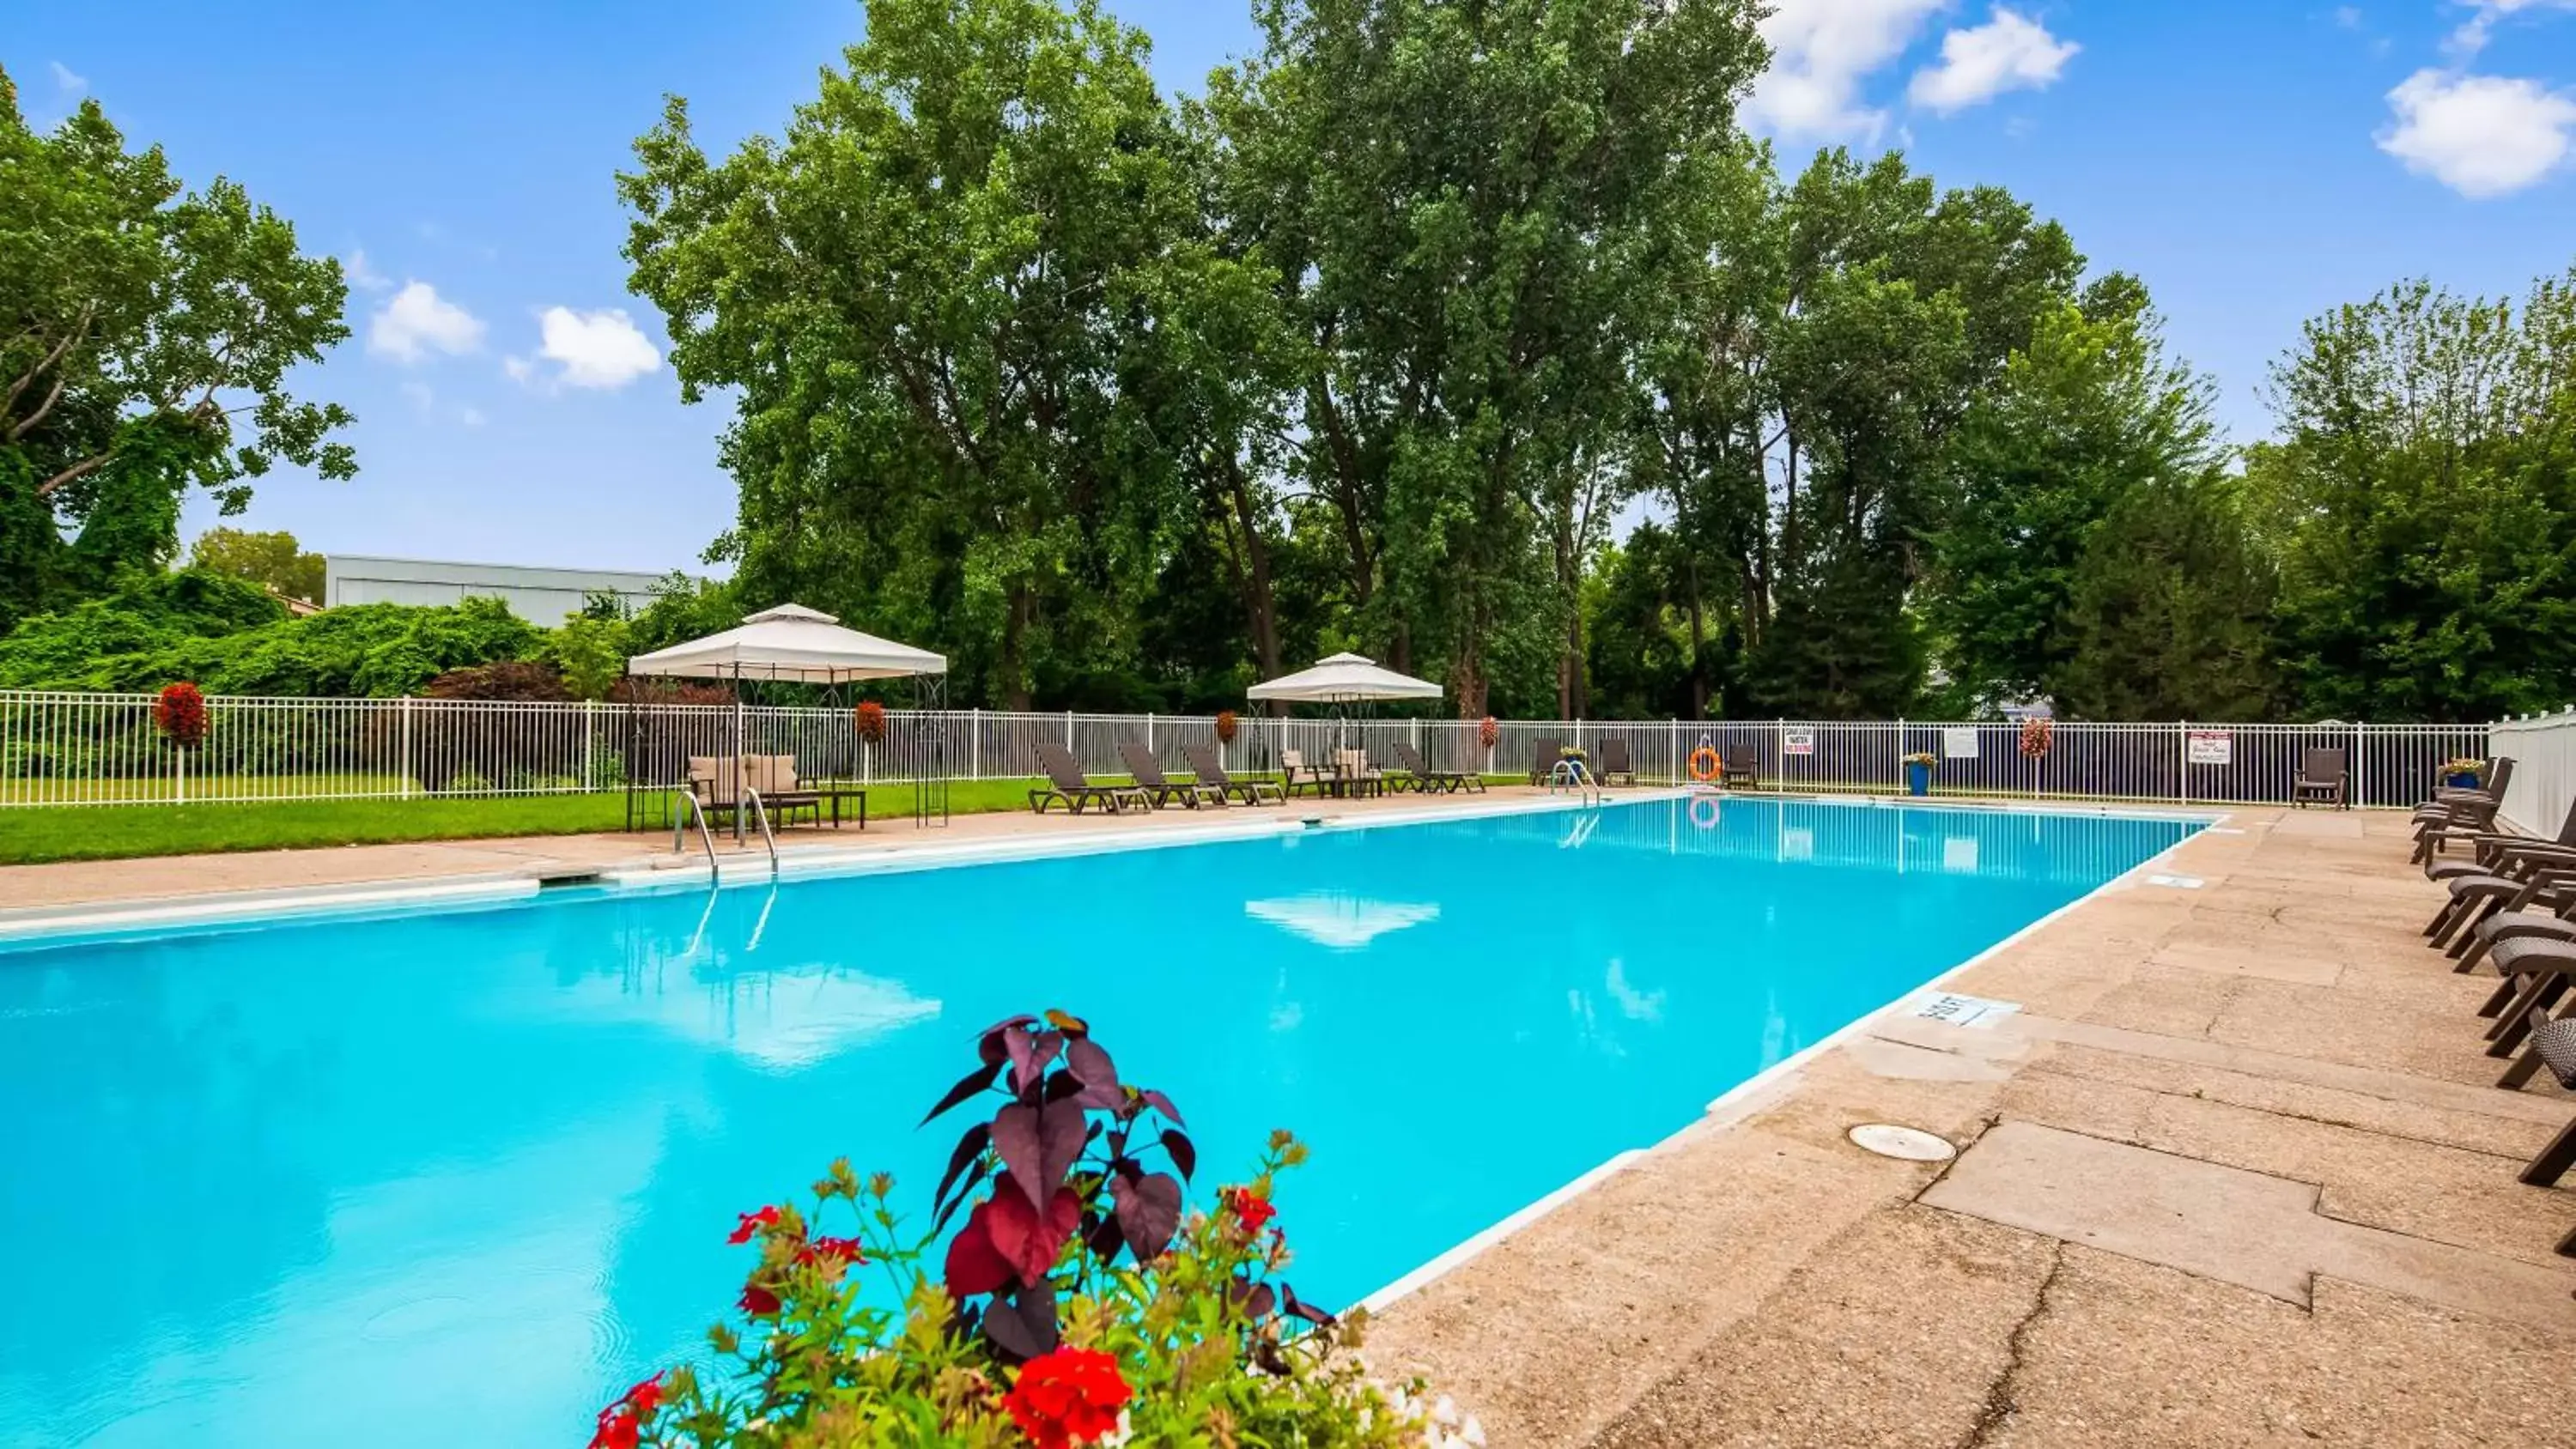 On site, Swimming Pool in Best Western Plus Guildwood Inn